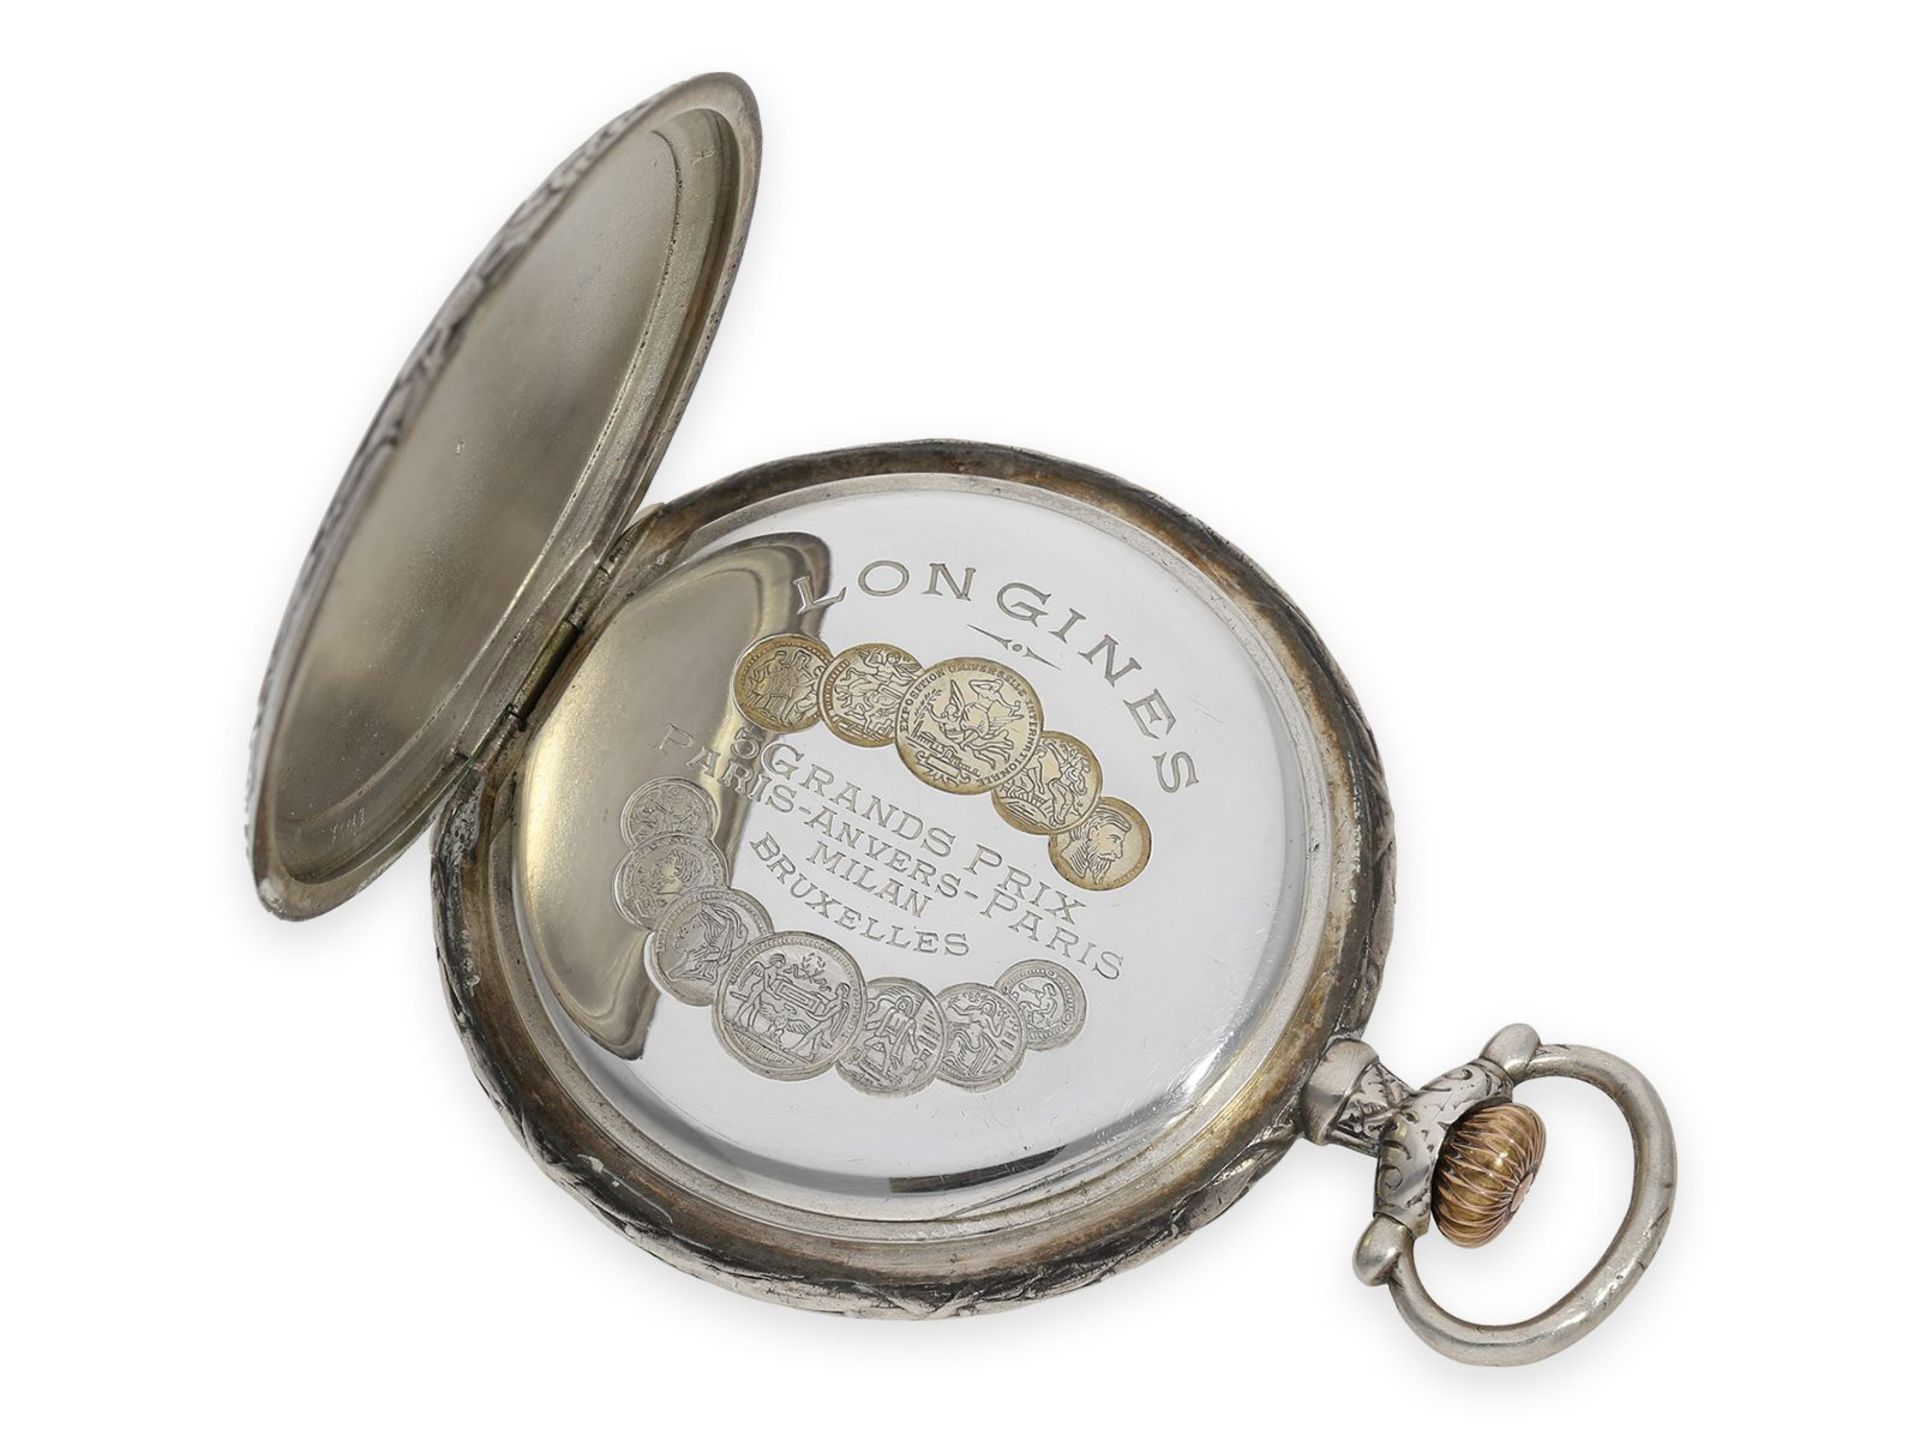 Taschenuhr: seltene Longines Schützenuhr, Bern 1914, mit dazugehöriger schwerer silberner Uhre - Bild 5 aus 9